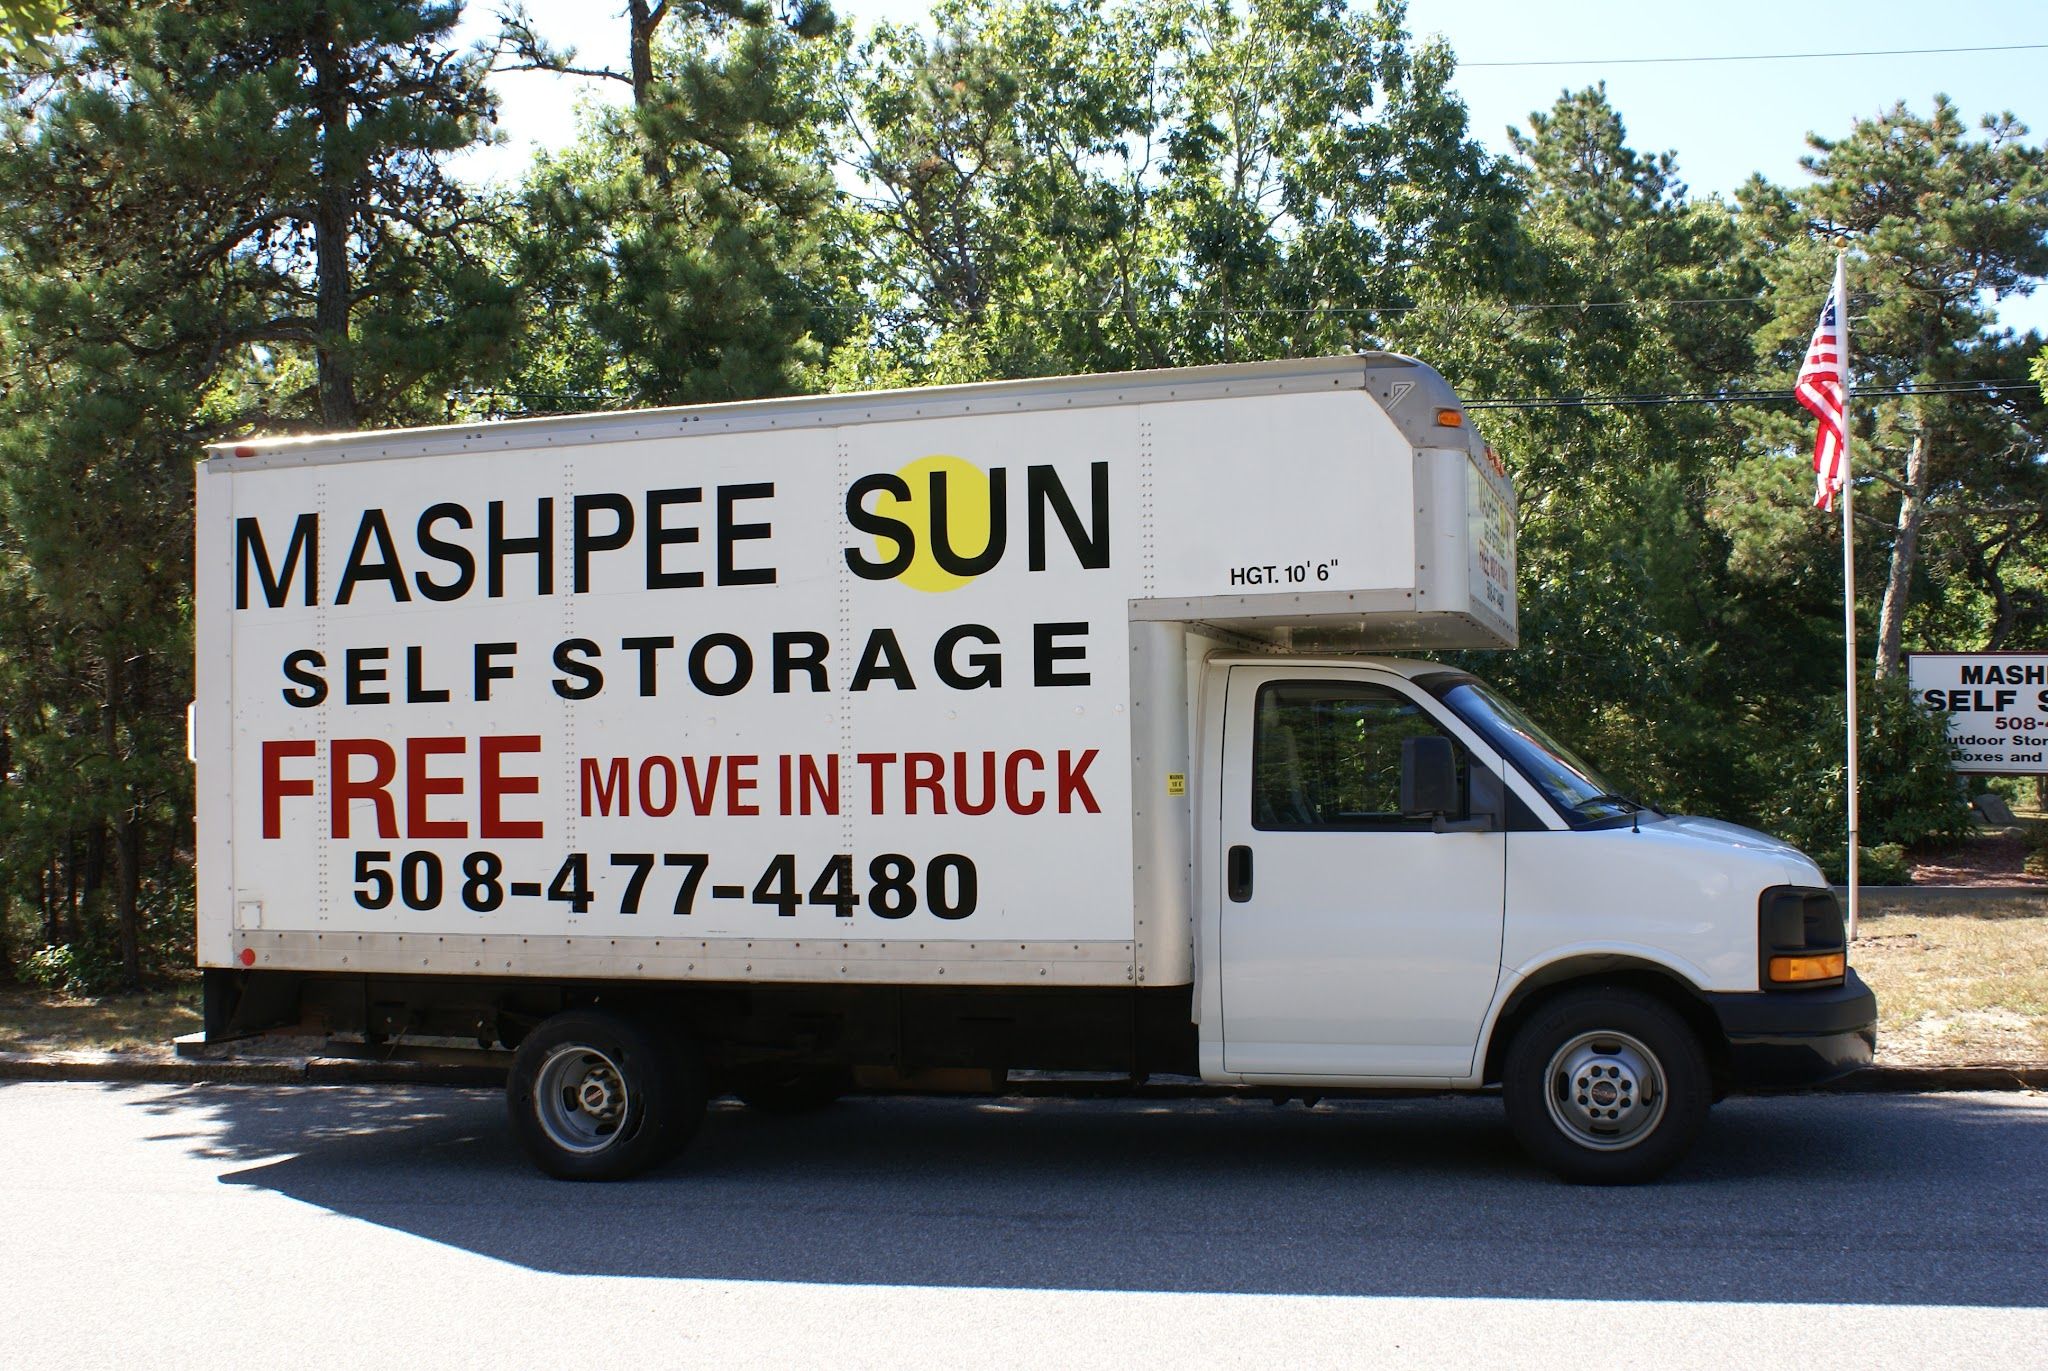 Mashpee Sun Self Storage